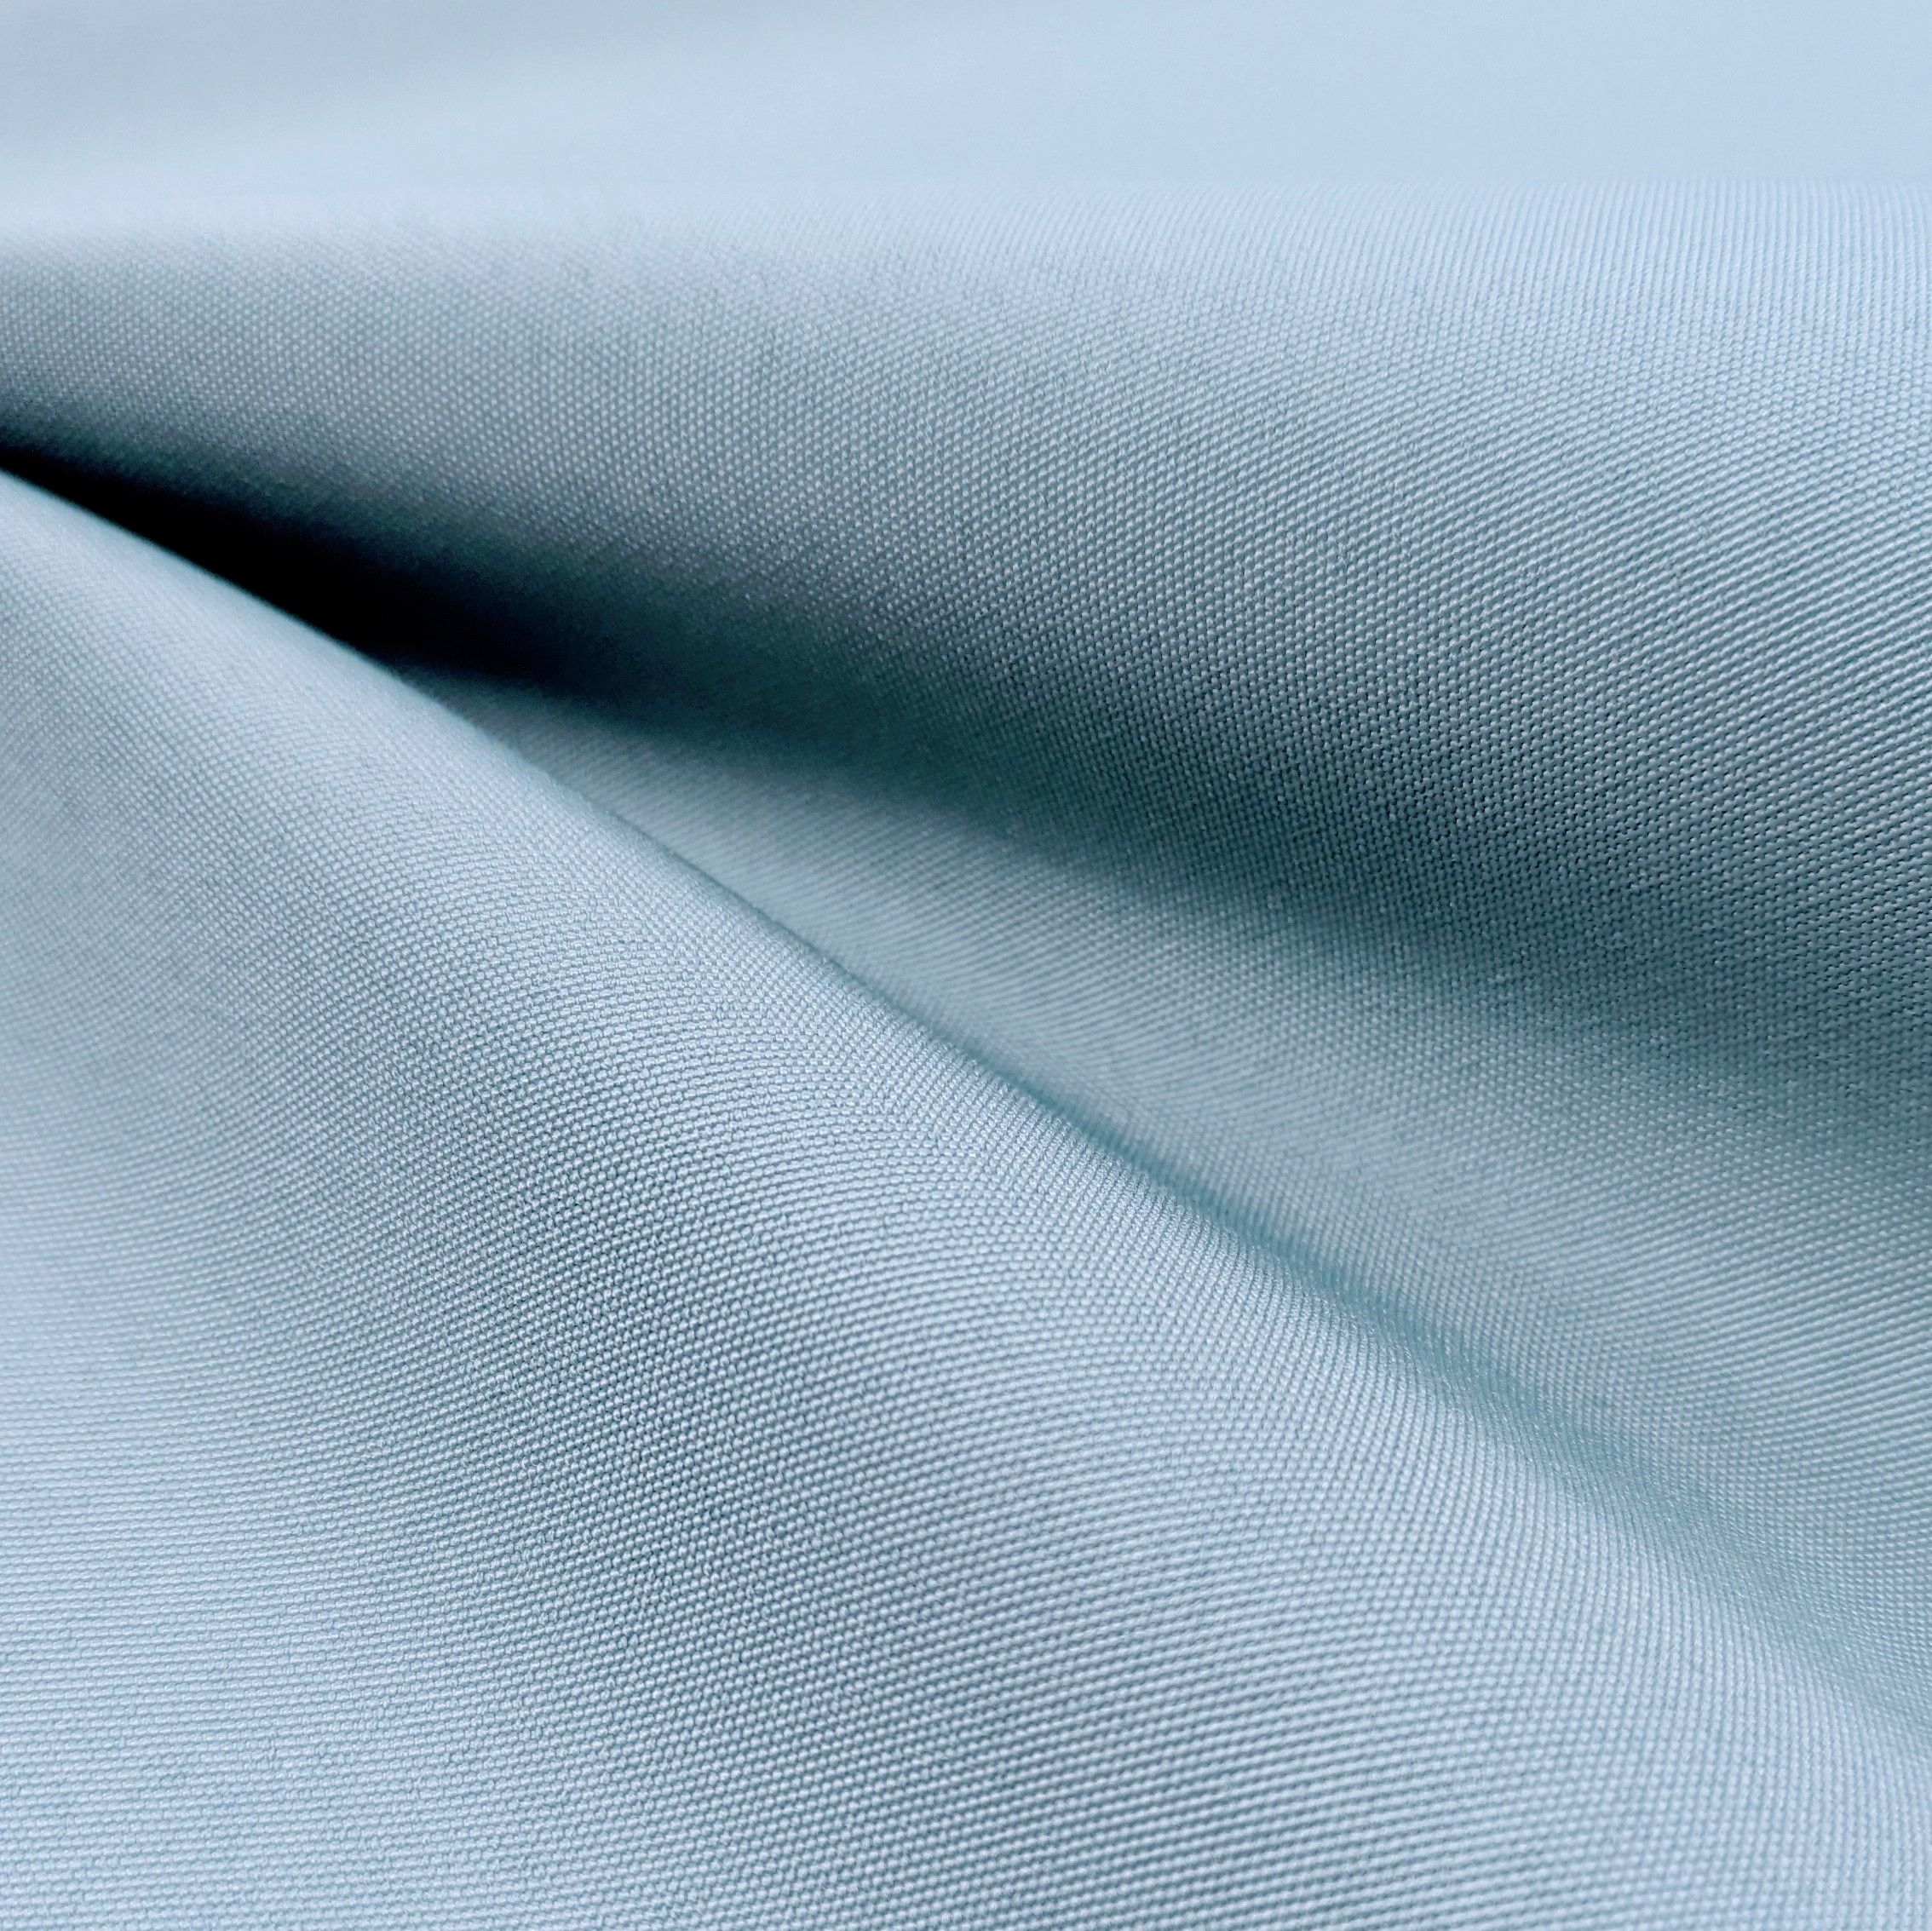 L'utilisation du polyester dans les fils textiles